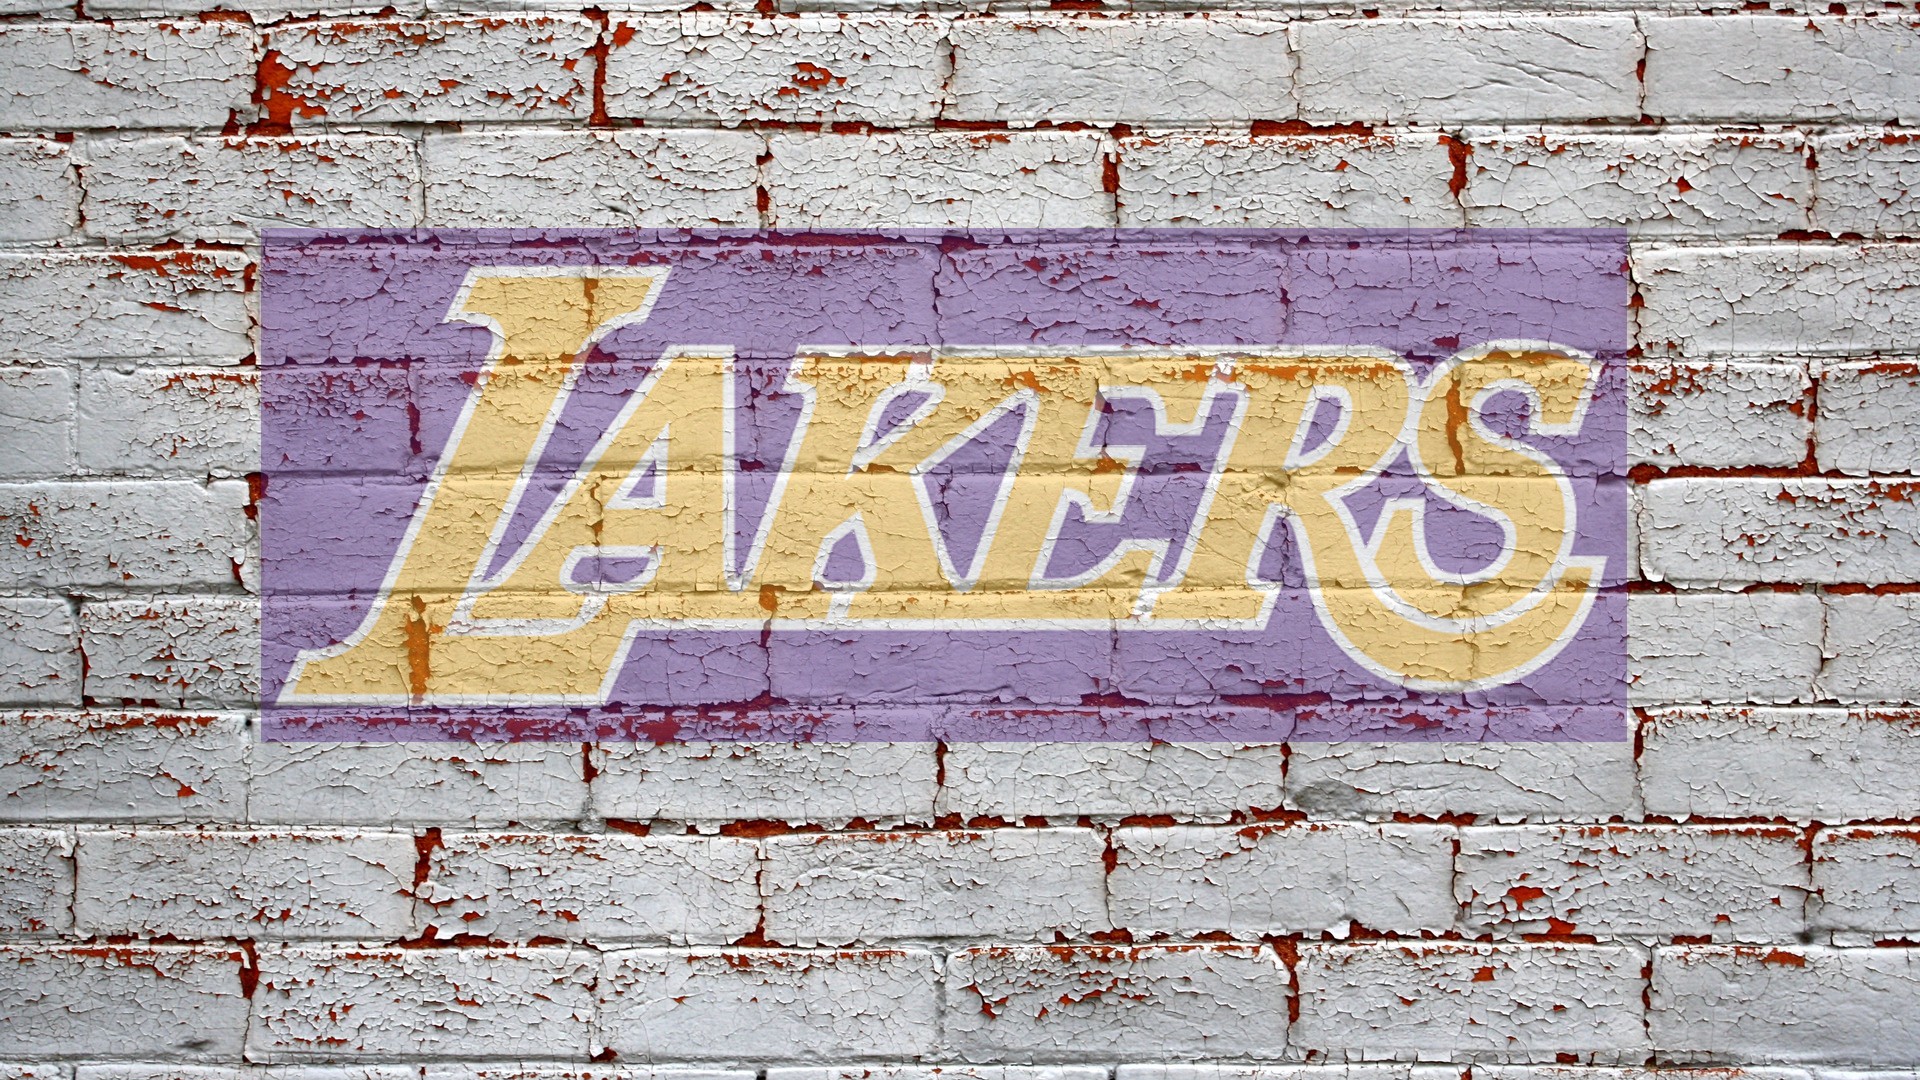 48+] Lakers Raiders Dodgers Wallpaper - WallpaperSafari